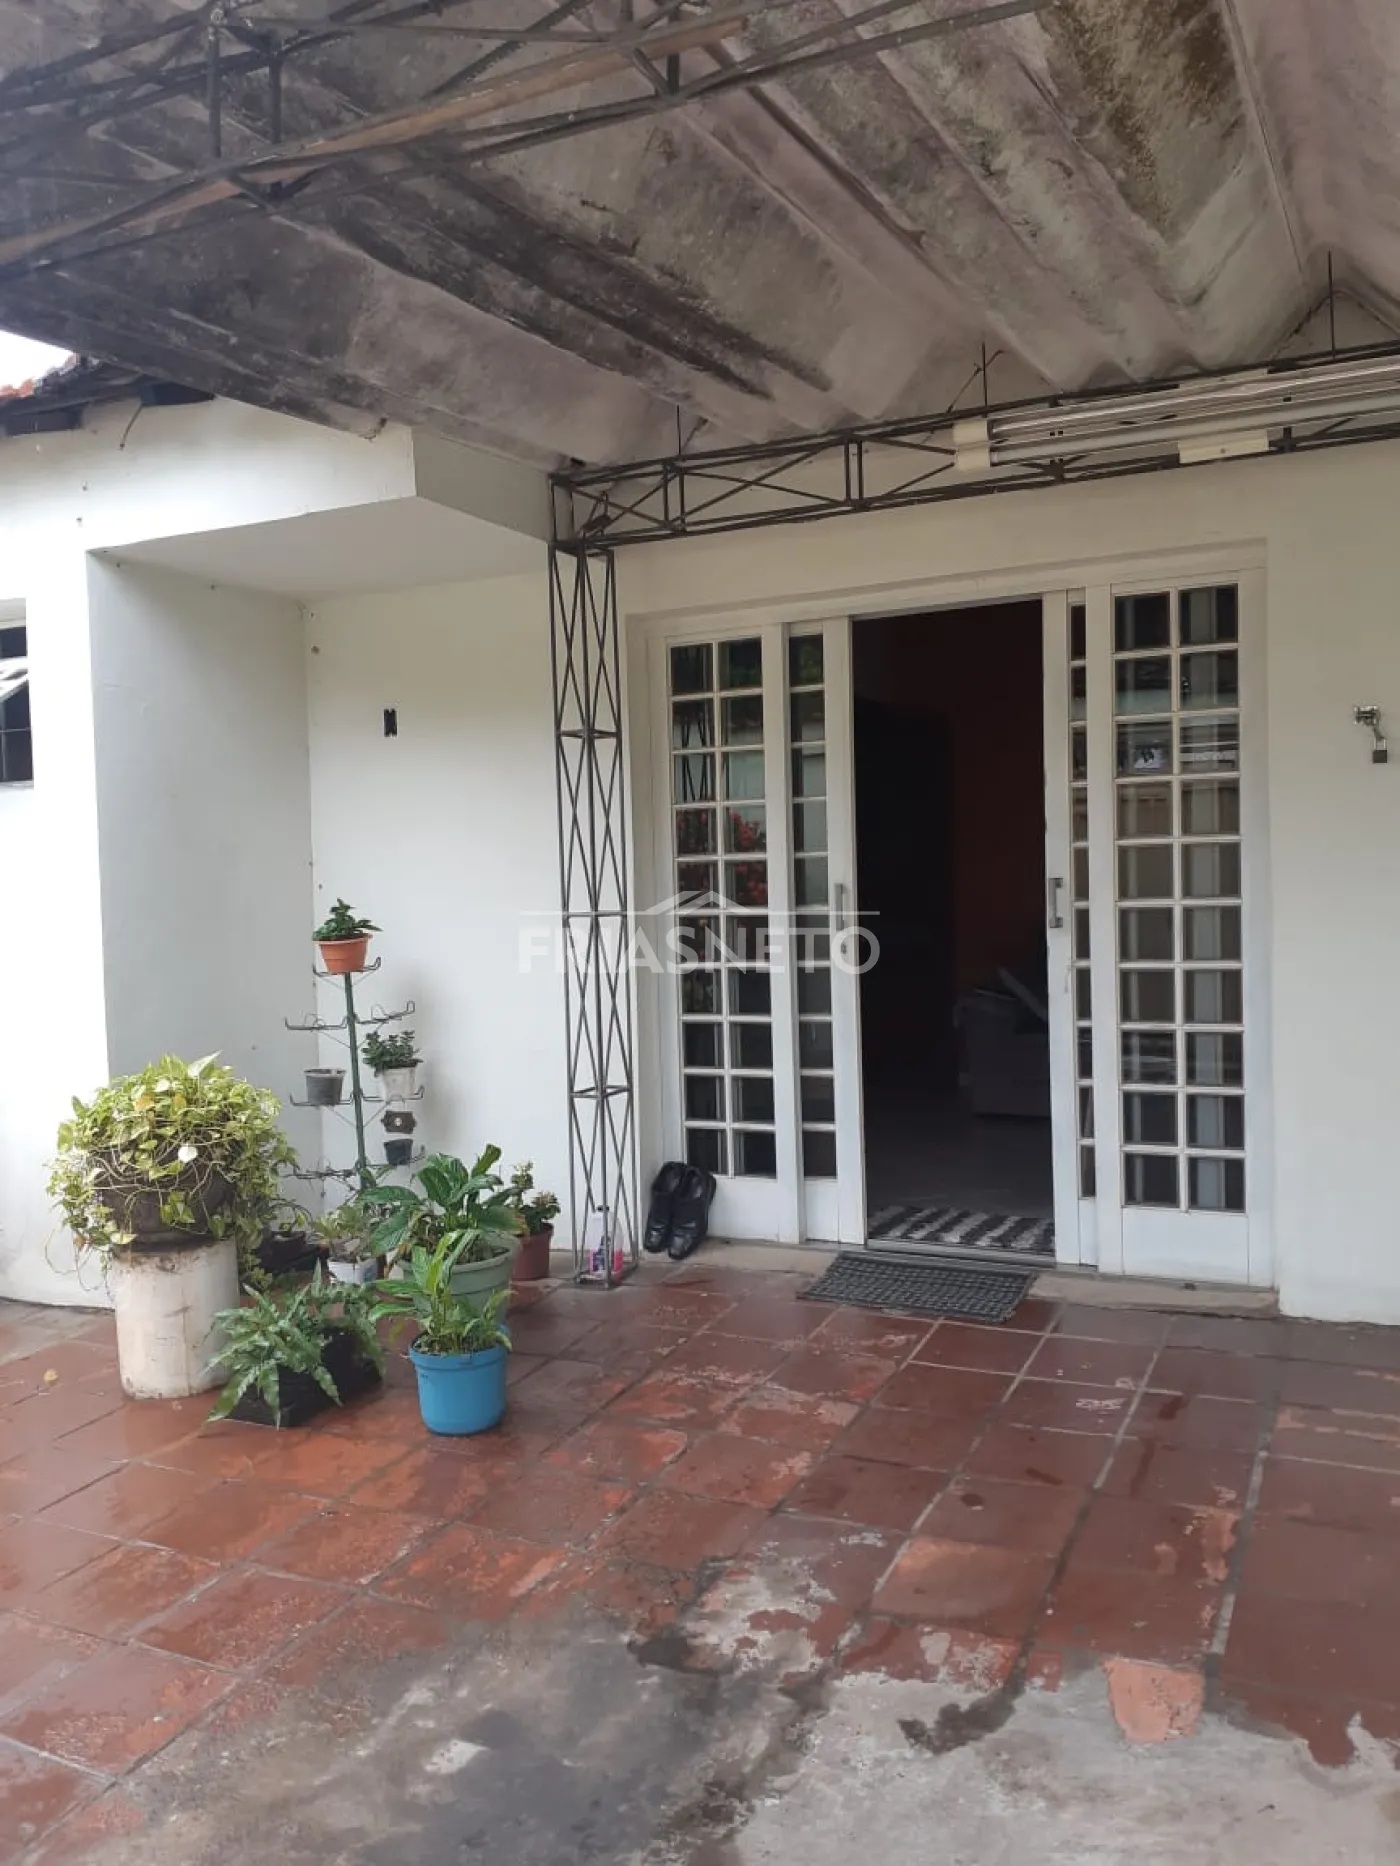 Casa com terreno de 250 m² de terreno, que pode ser utilizado para uso comercial ou residencial, à venda em uma das área mais nobres da Vila Rezende.